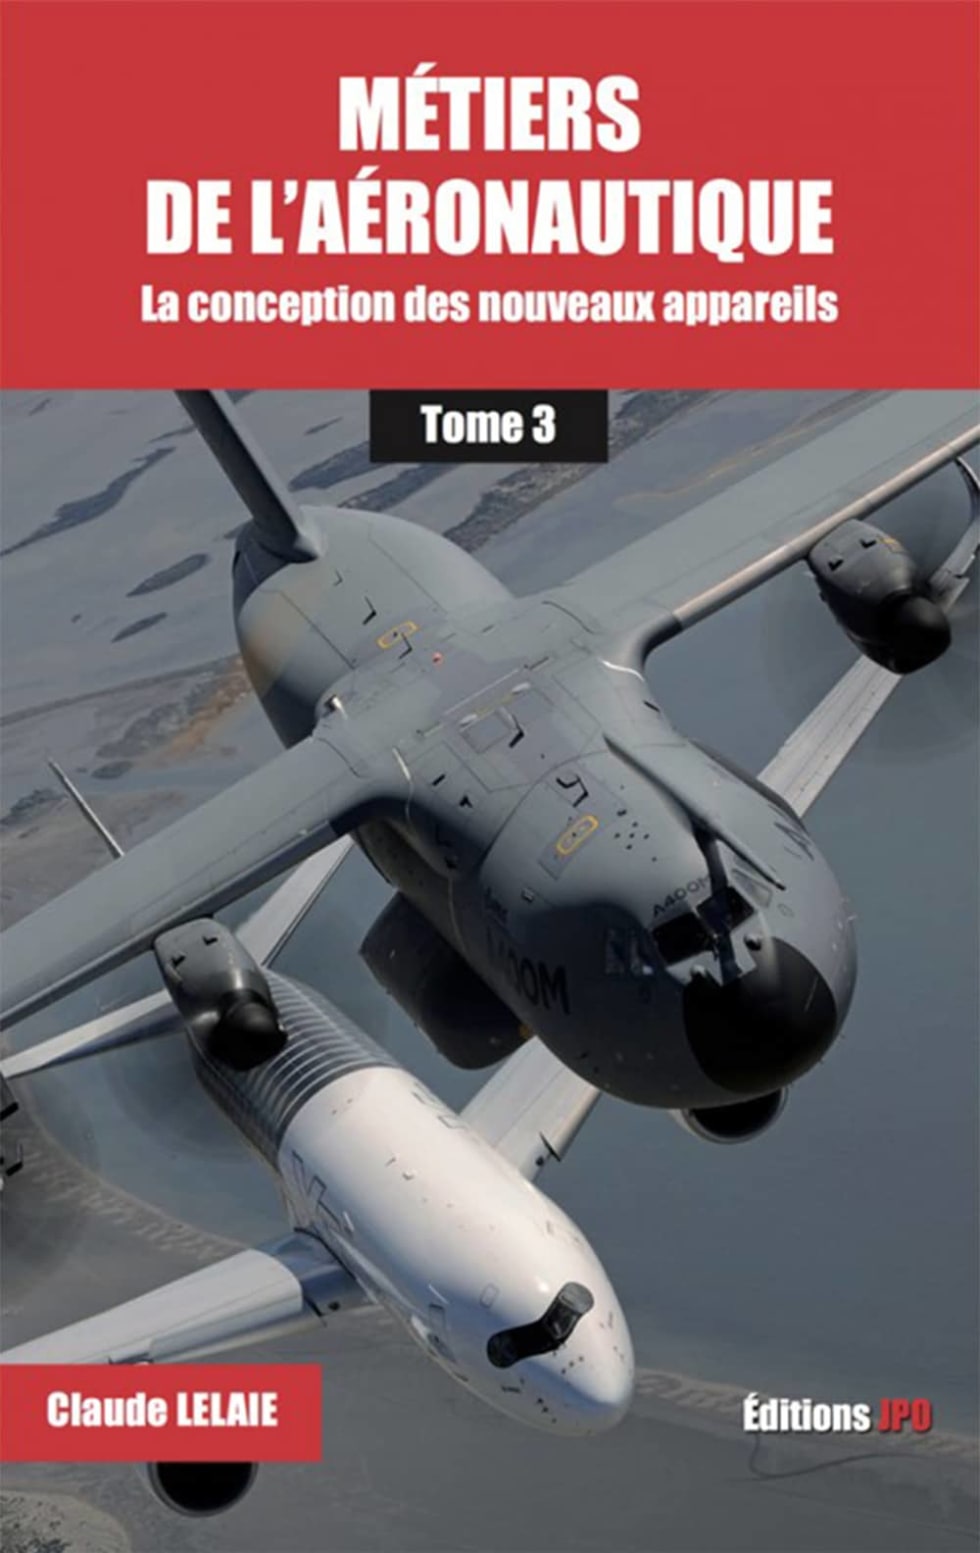 Volume 3 of the book "les métiers de l'aéronautique"